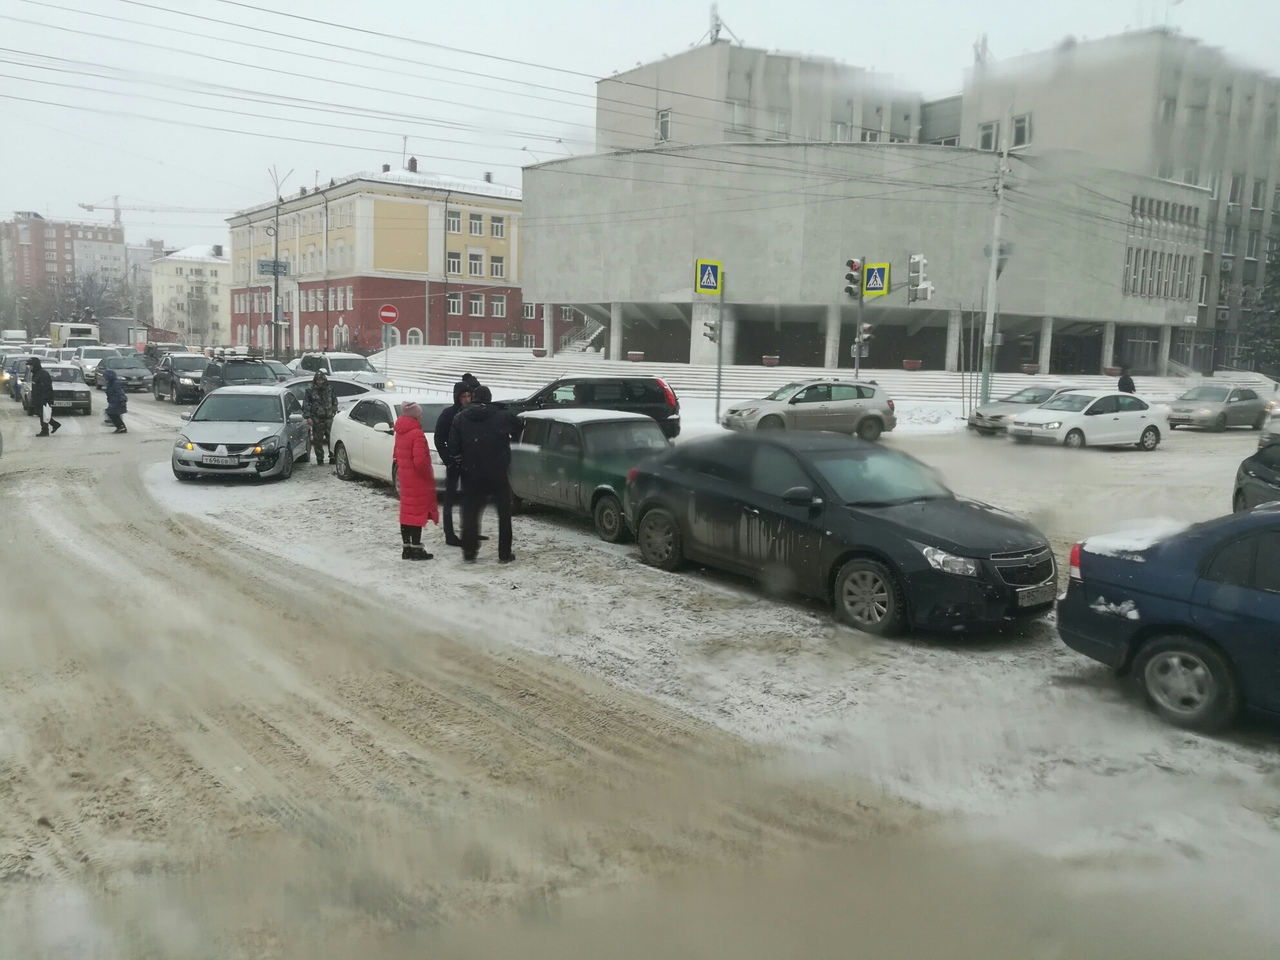 Из-за непогоды в Омске машины разбиваются одна за другой #Омск #Происшествия